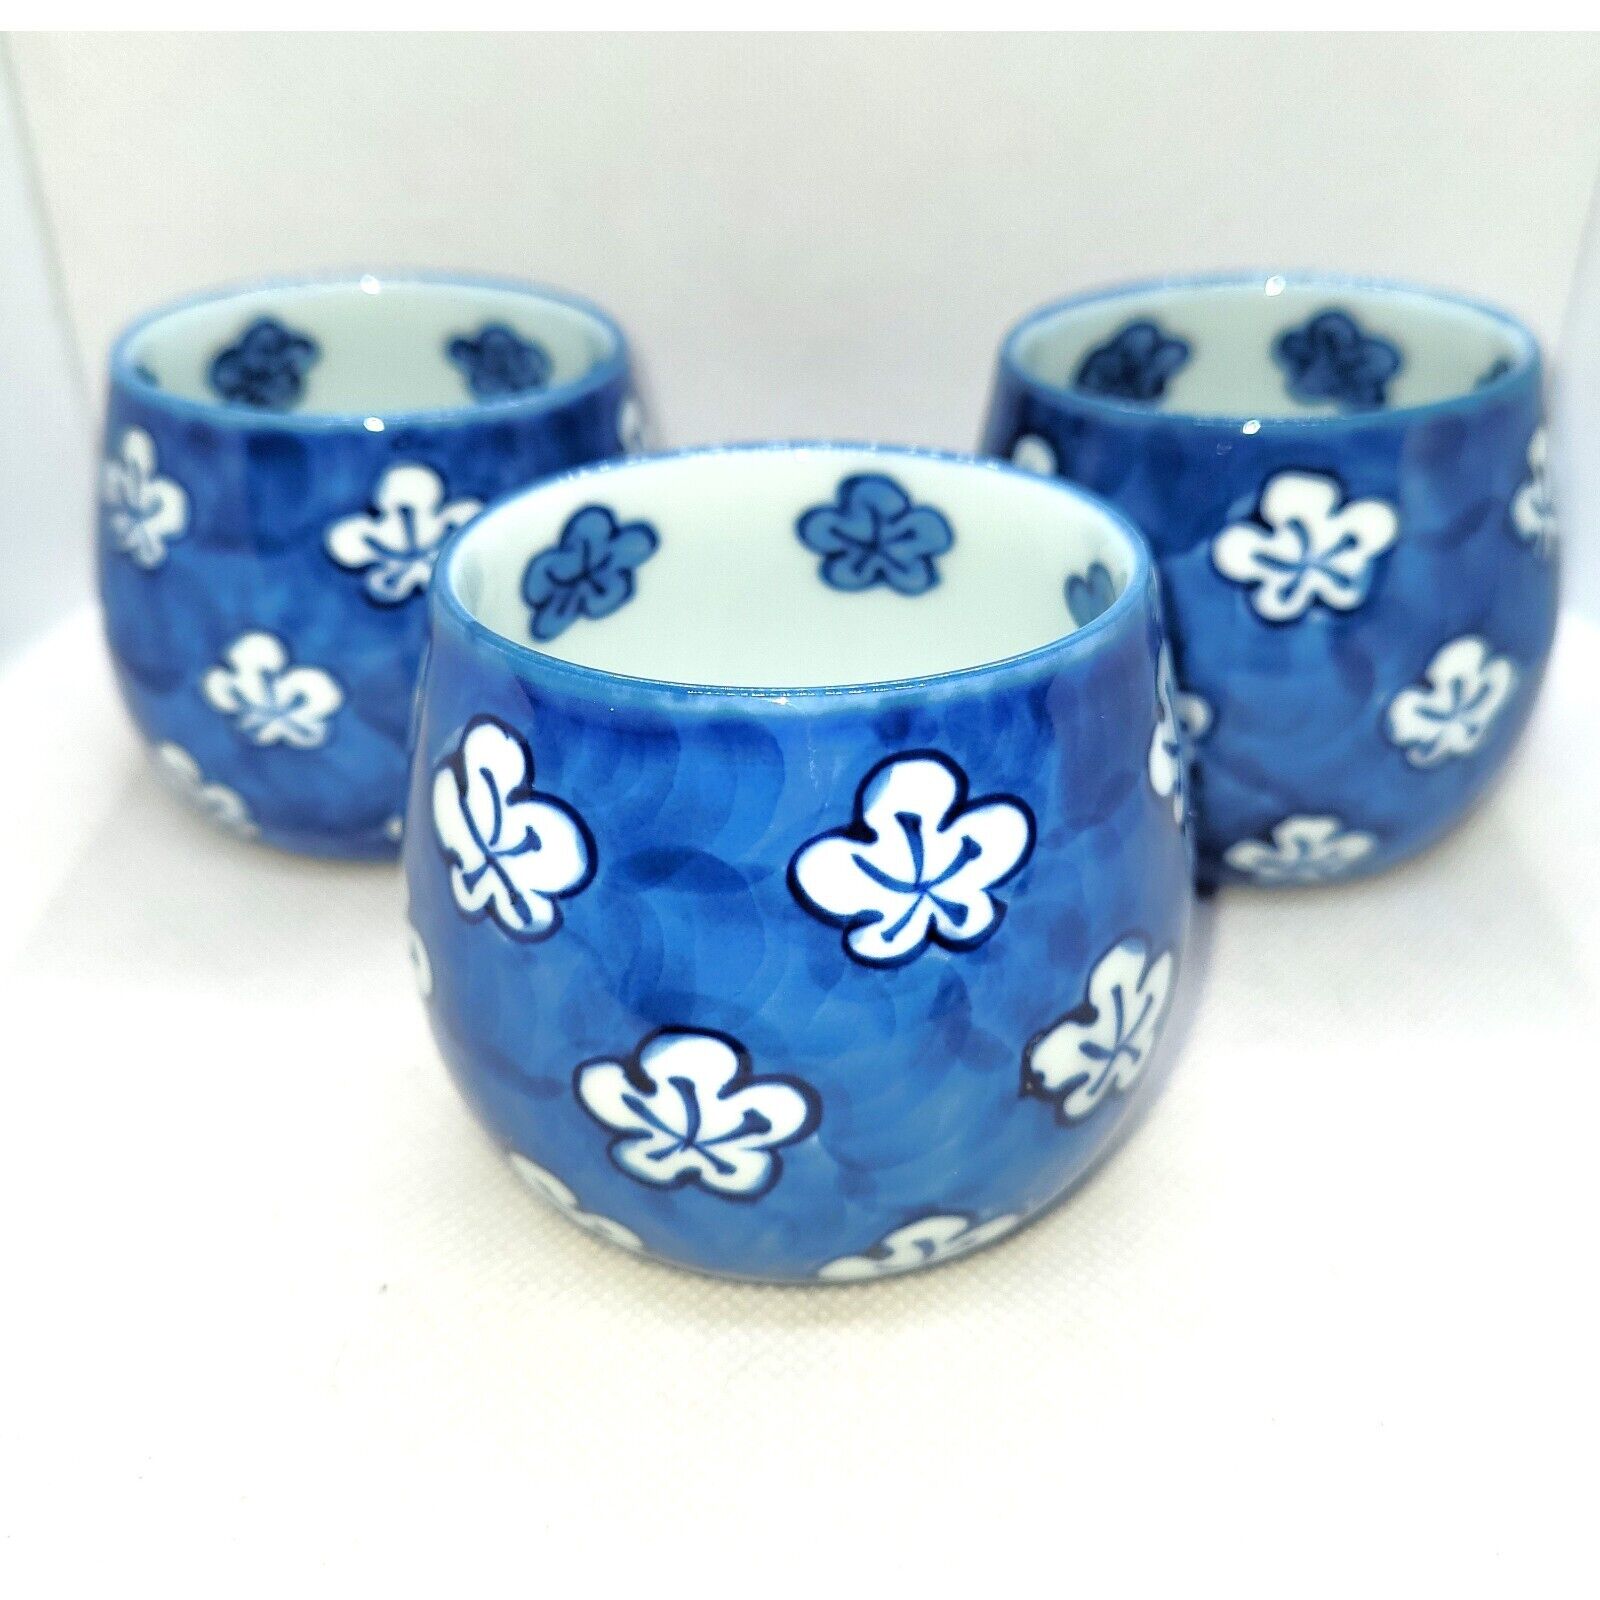 Japanese Arita Yaki Tatebayashi Genemon set of 3 teacups with floral motifs